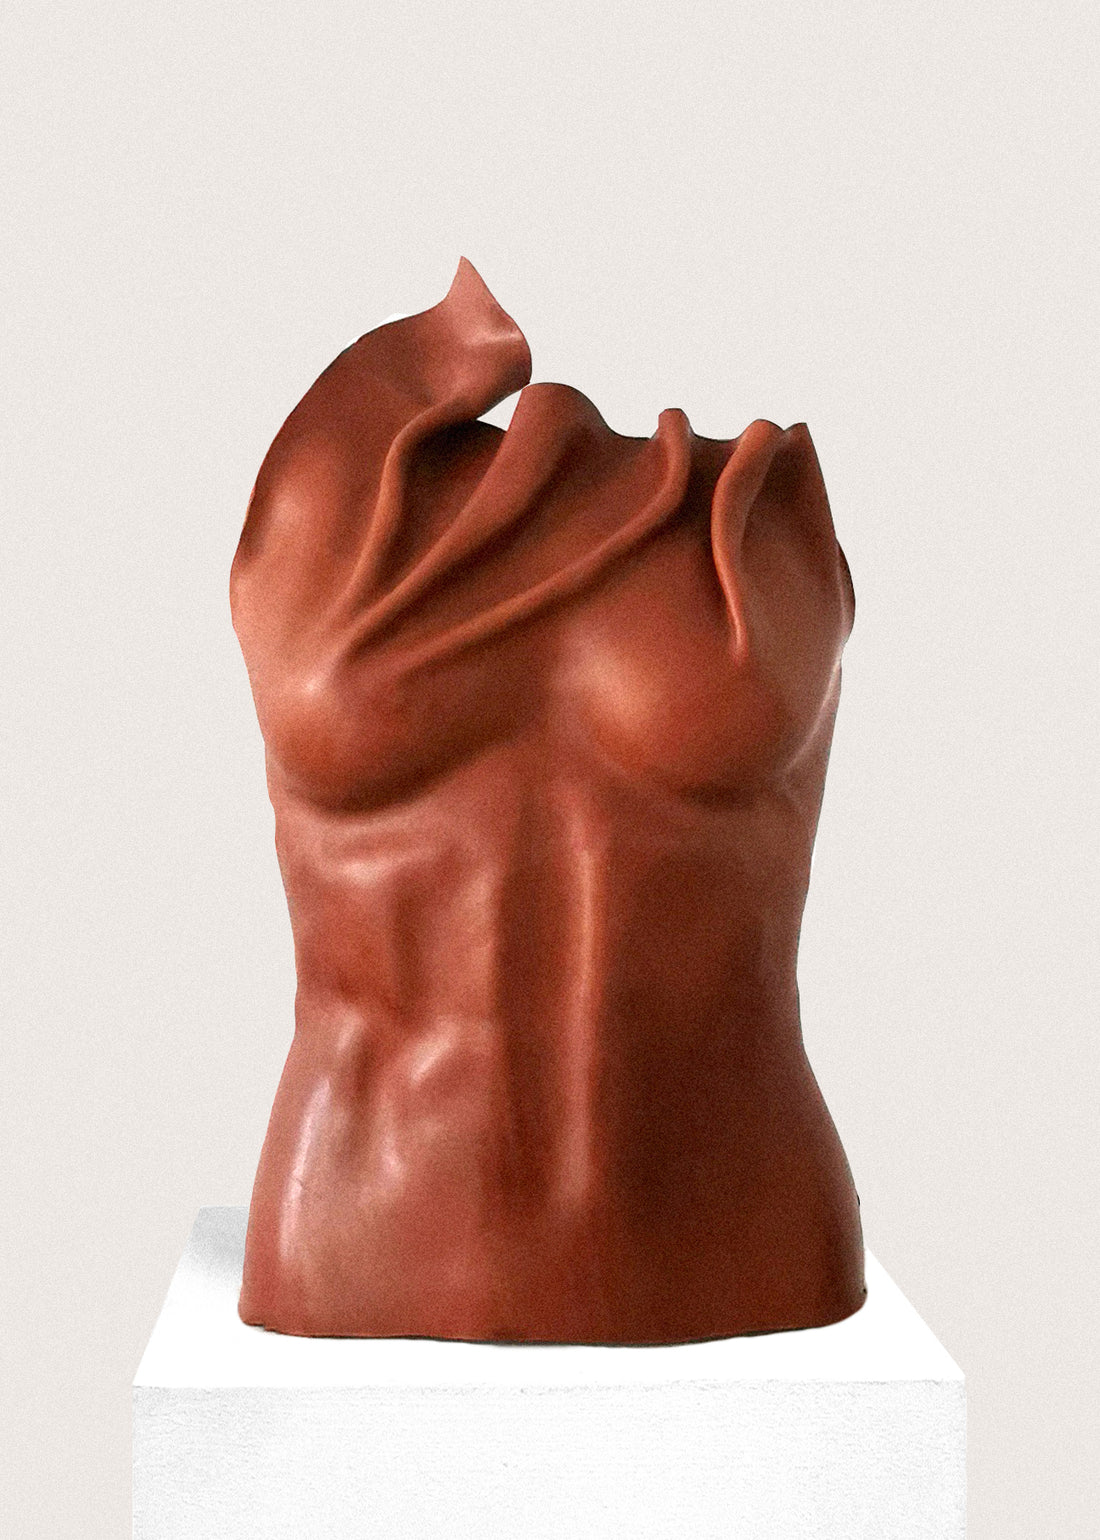 Sculpt me dear, terracotta torso